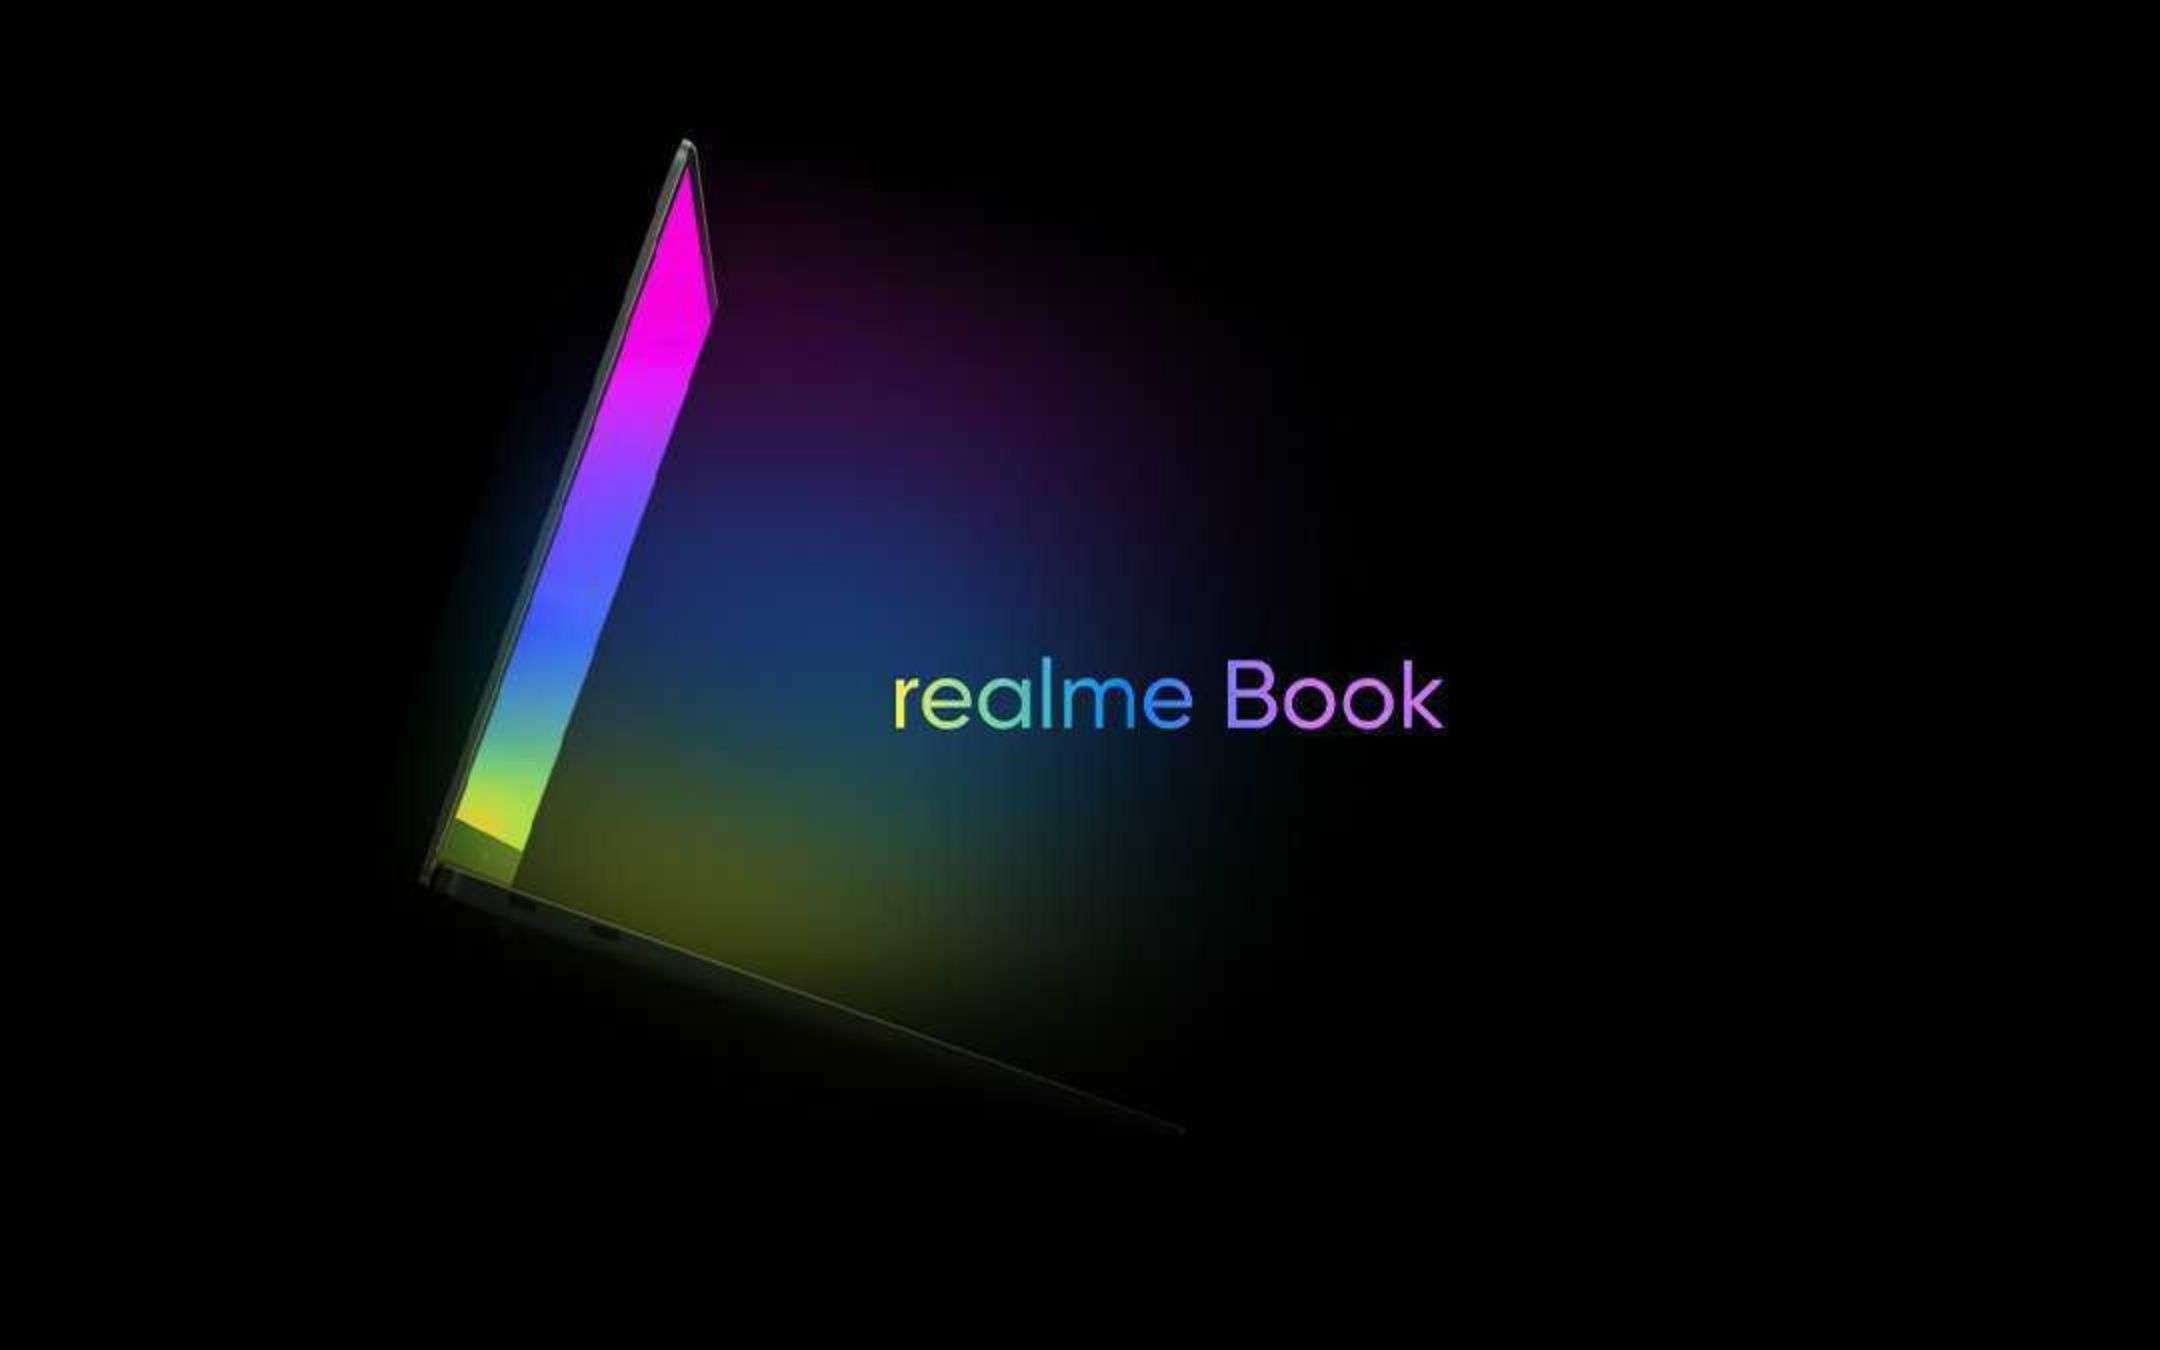 Realme Book e Realme Pad: dove li abbiamo già visti?